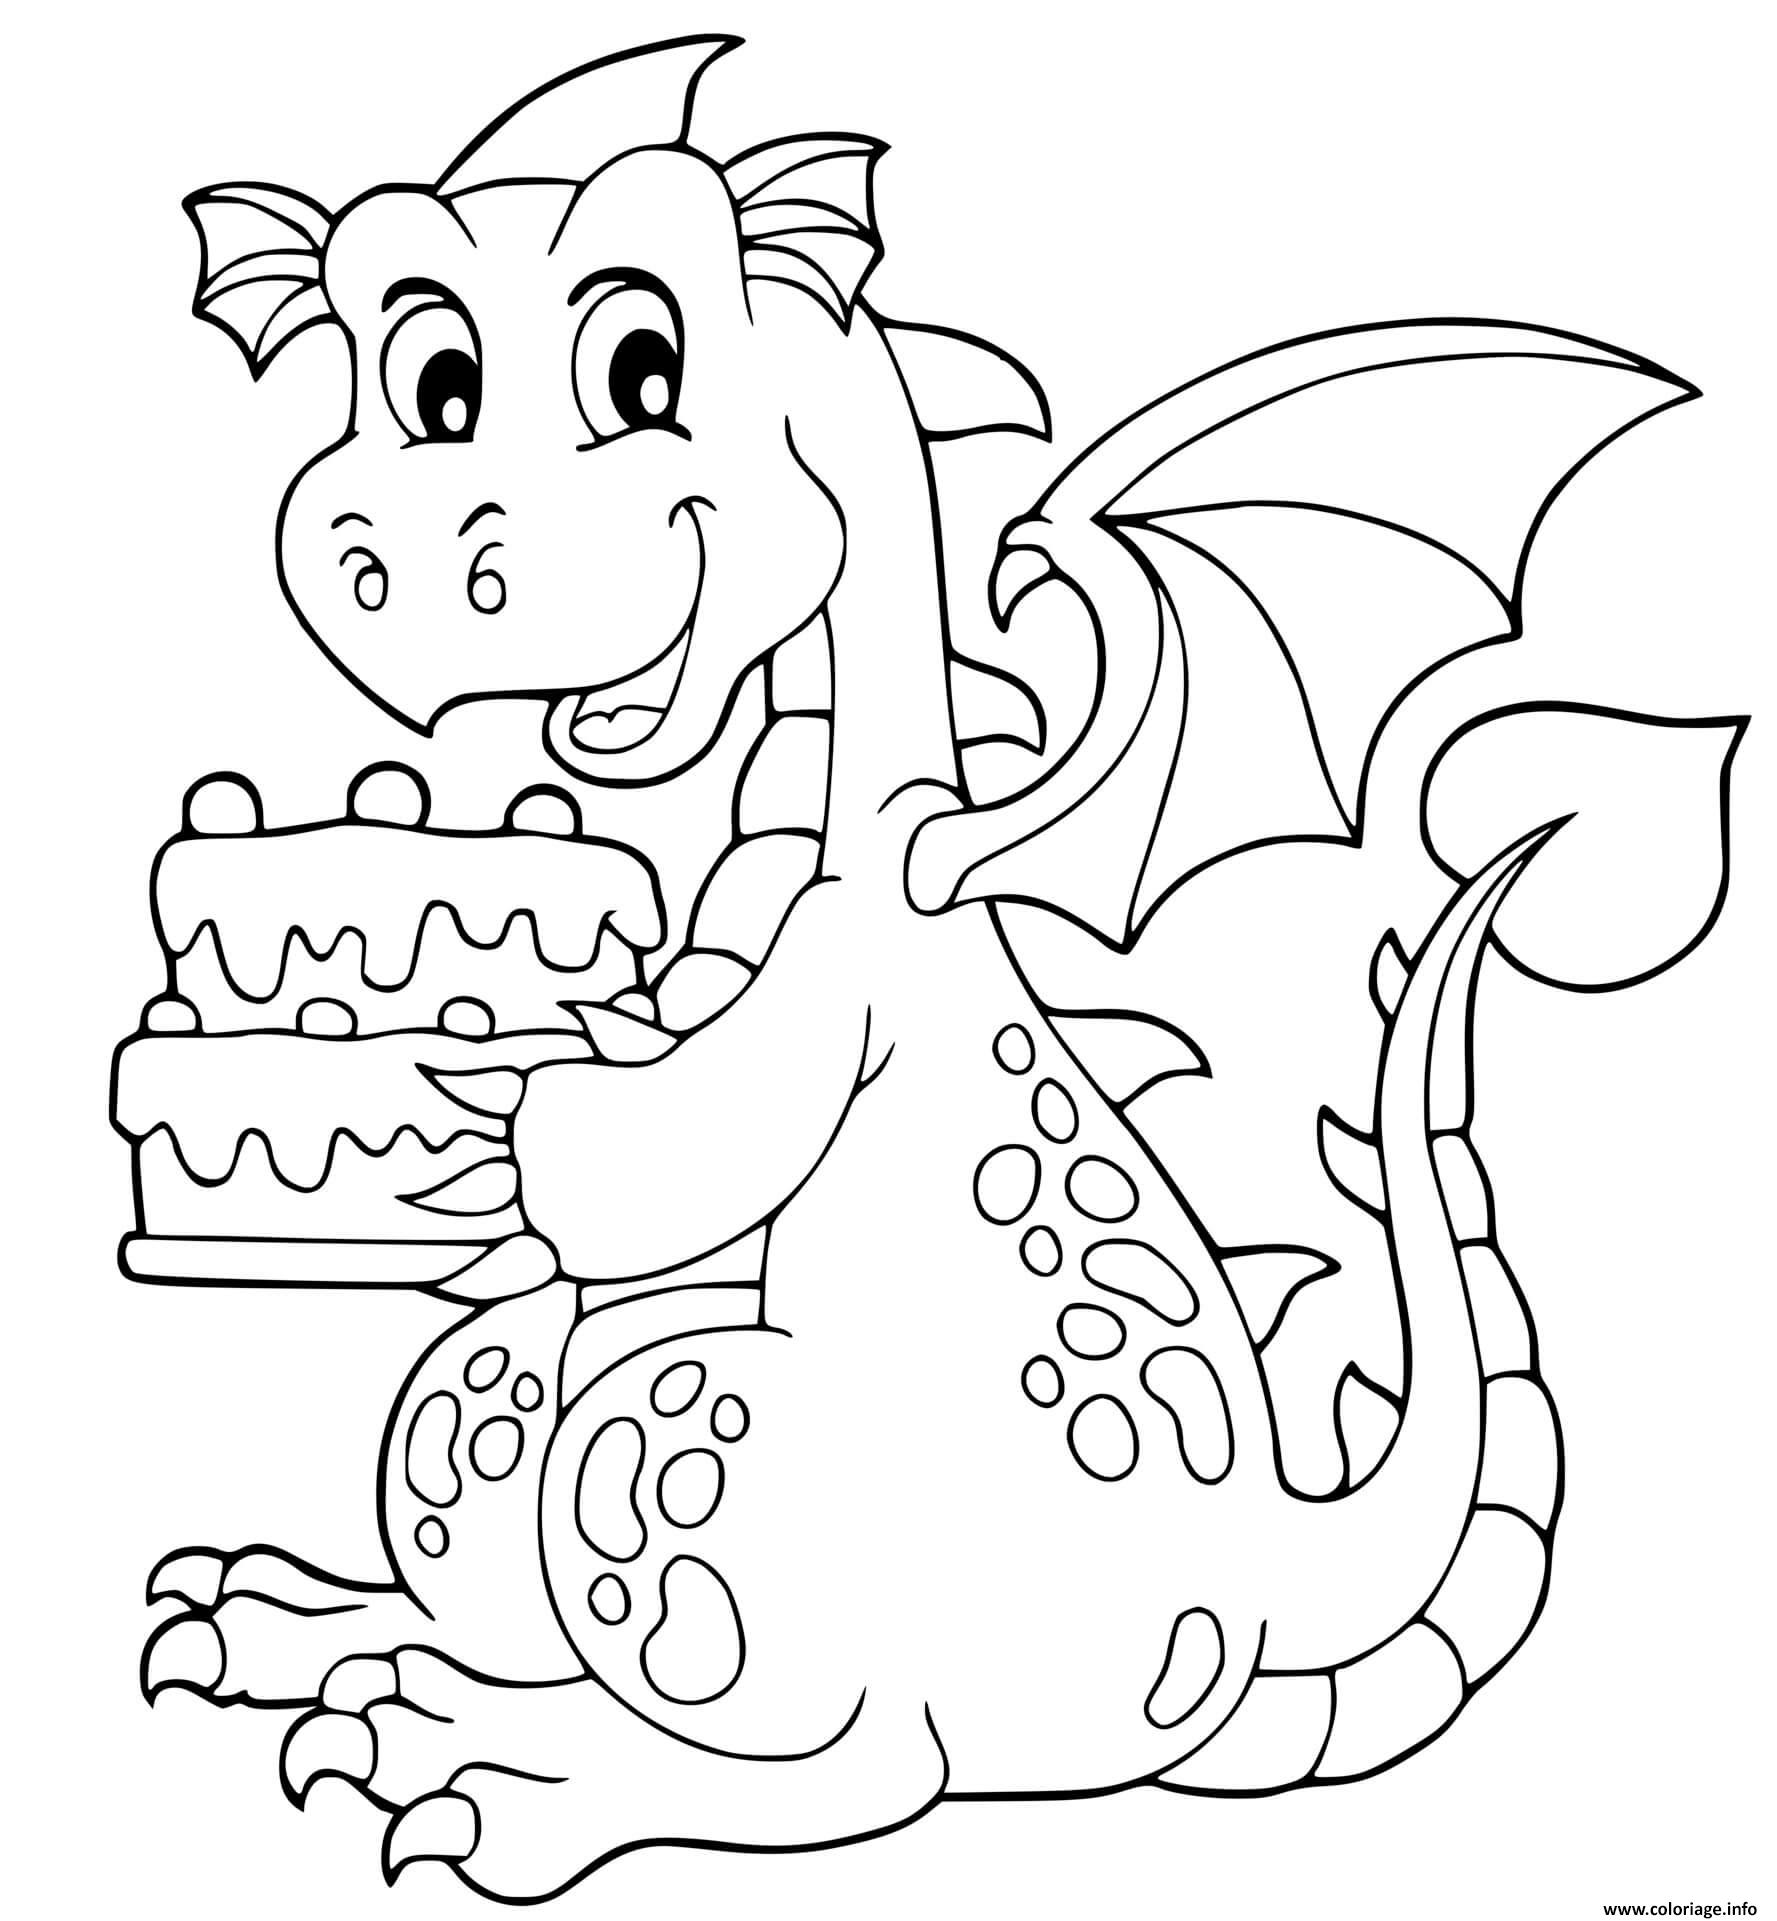 Dessin anniversaire dragon avec un gateau pour sa fete Coloriage Gratuit à Imprimer